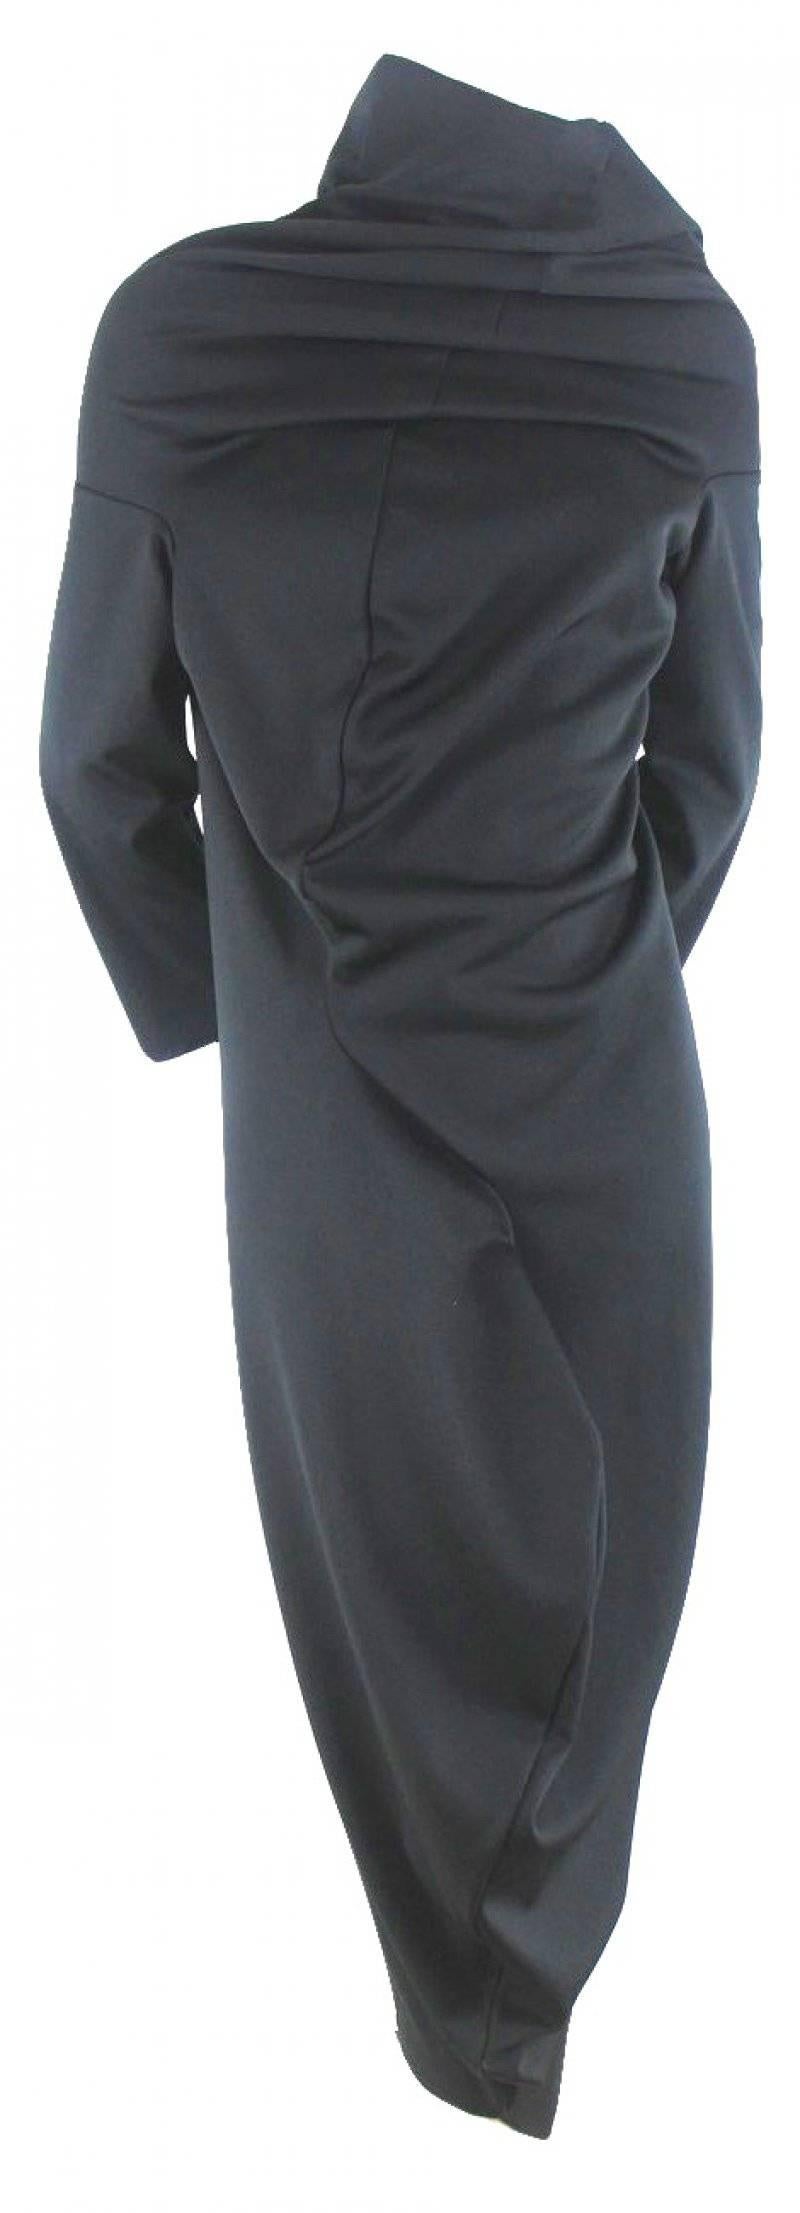 Black Comme des Garcons 2011 Collection S-Curve Dress